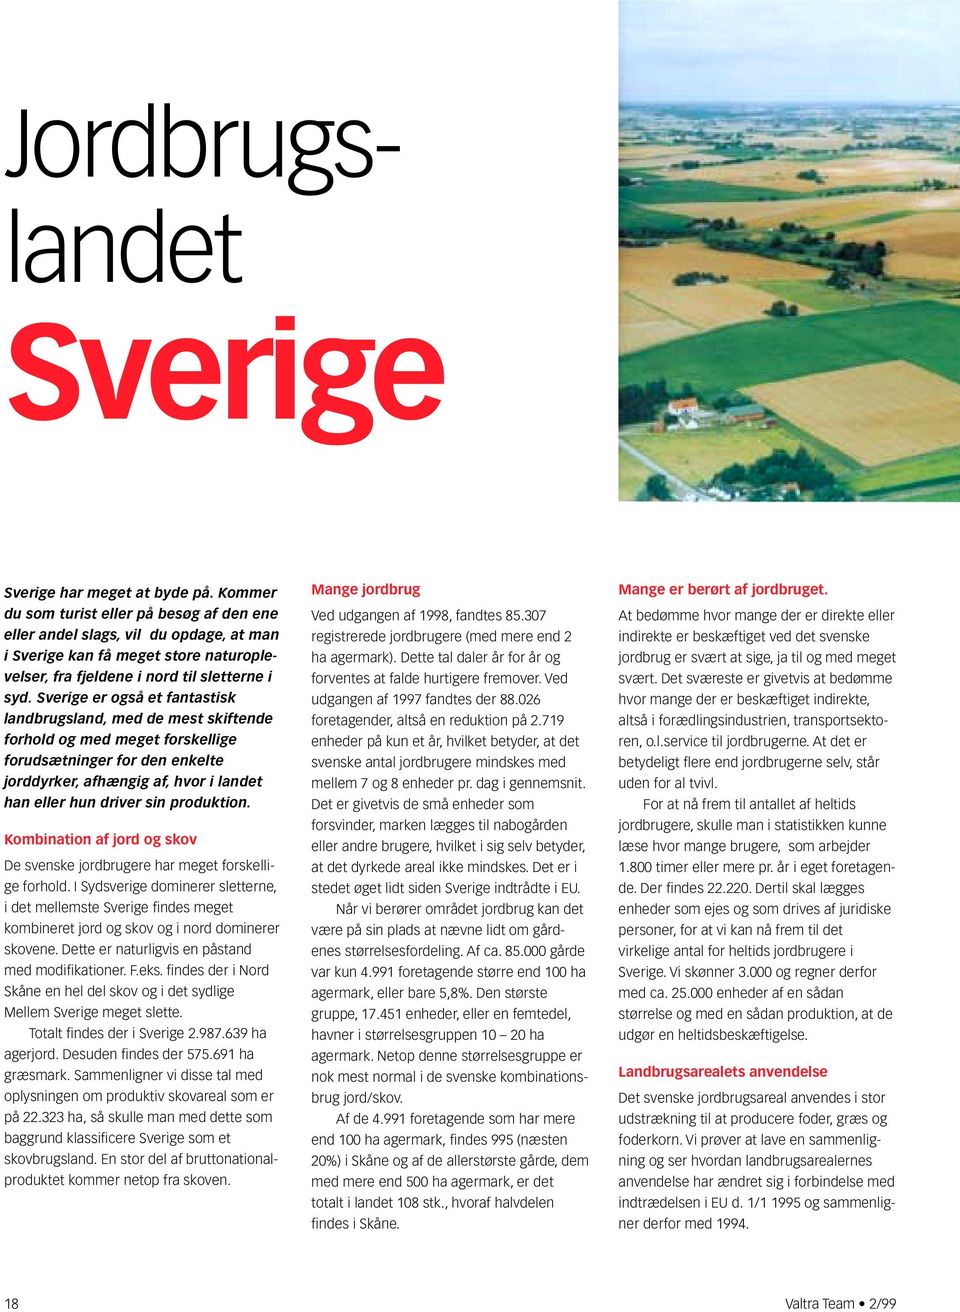 Sverige er også et fantastisk landbrugsland, med de mest skiftende forhold og med meget forskellige forudsætninger for den enkelte jorddyrker, afhængig af, hvor i landet han eller hun driver sin